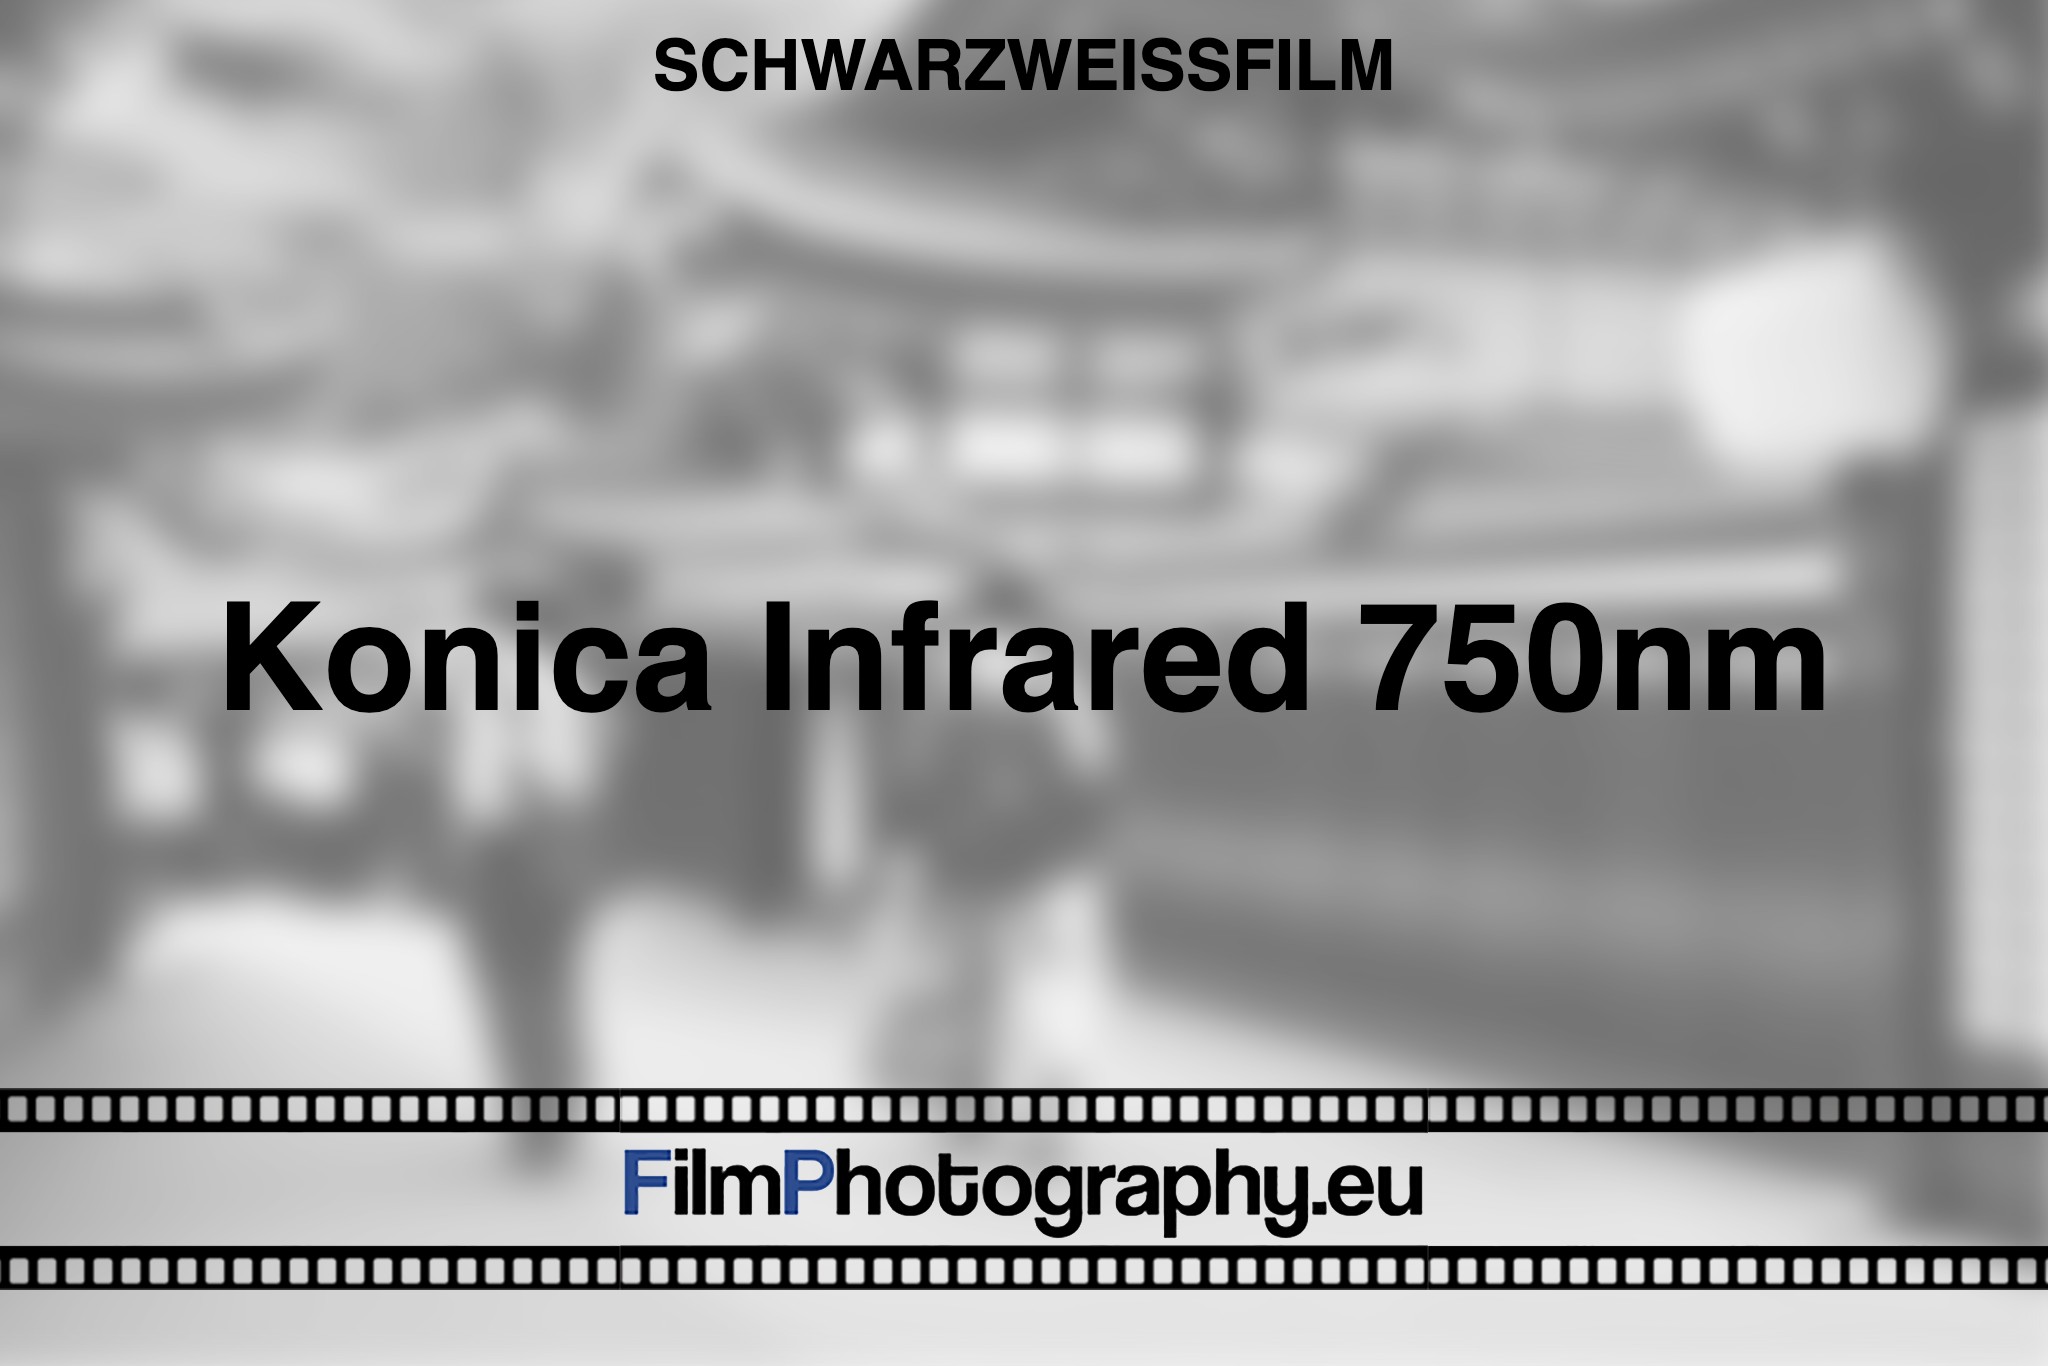 konica-infrared-750nm-schwarzweißfilm-bnv